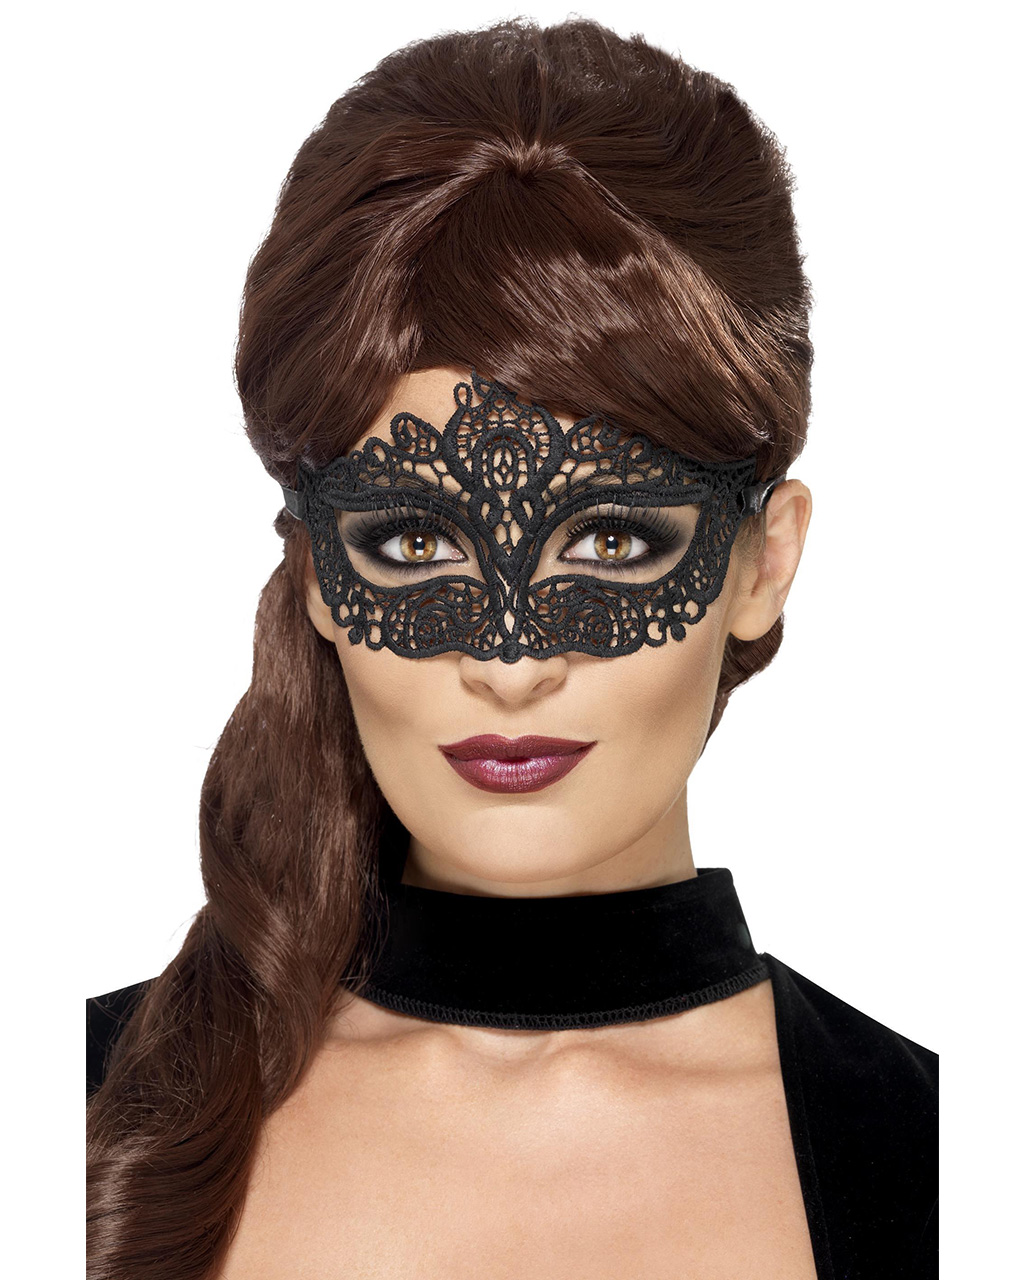 Аксессуары маски. Маска на глаза карнавальная. Кружевная маска для лица. Кружевная маска на глаза. Маска карнавальная черная.